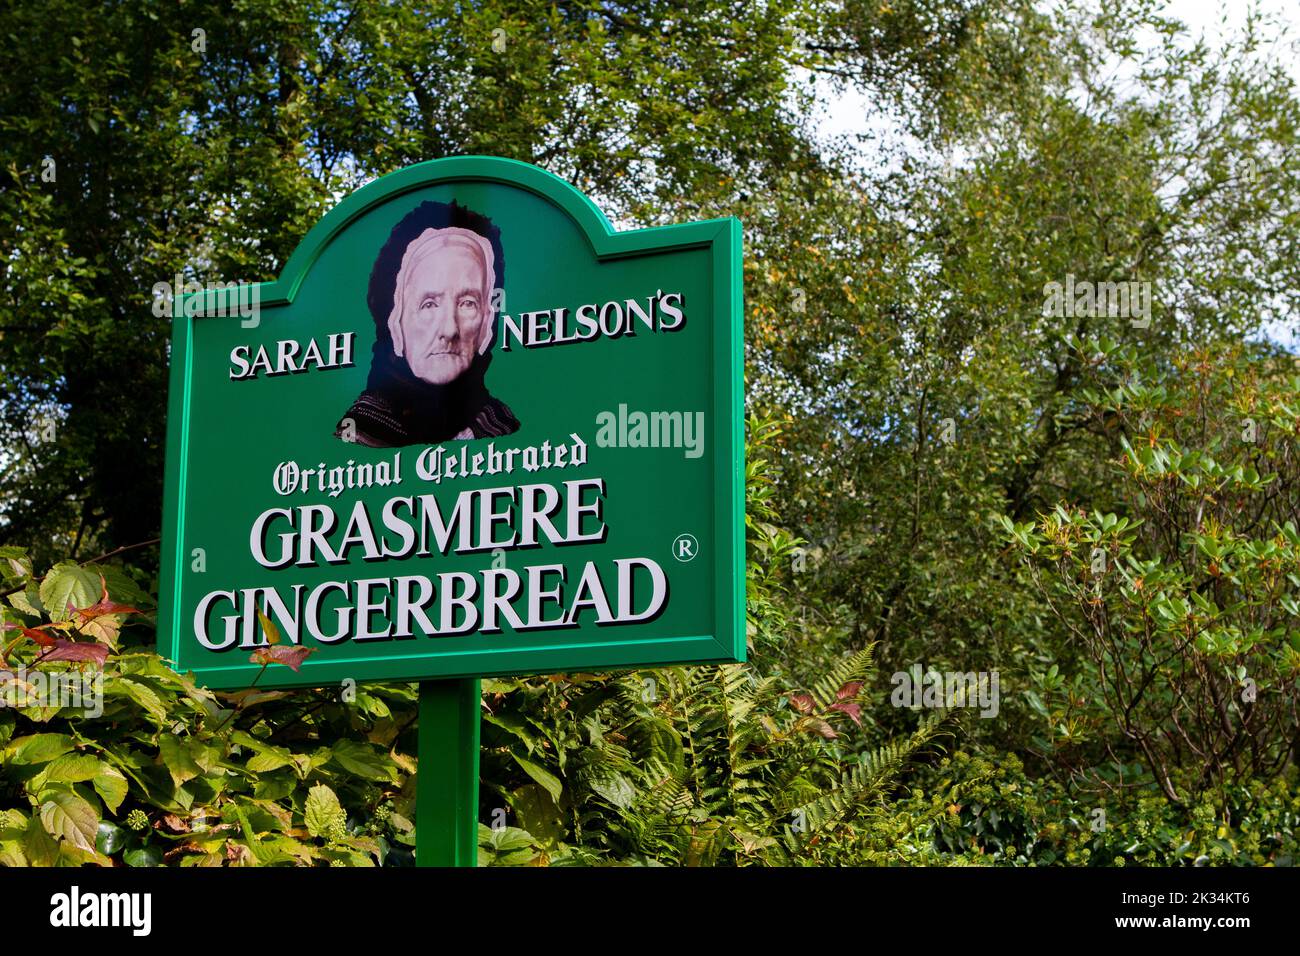 La tienda de pan de jengibre Grasmere de Sarah Nelson está en el pueblo de Grasmere, en el distrito de los lagos, Cumbria. Foto de stock